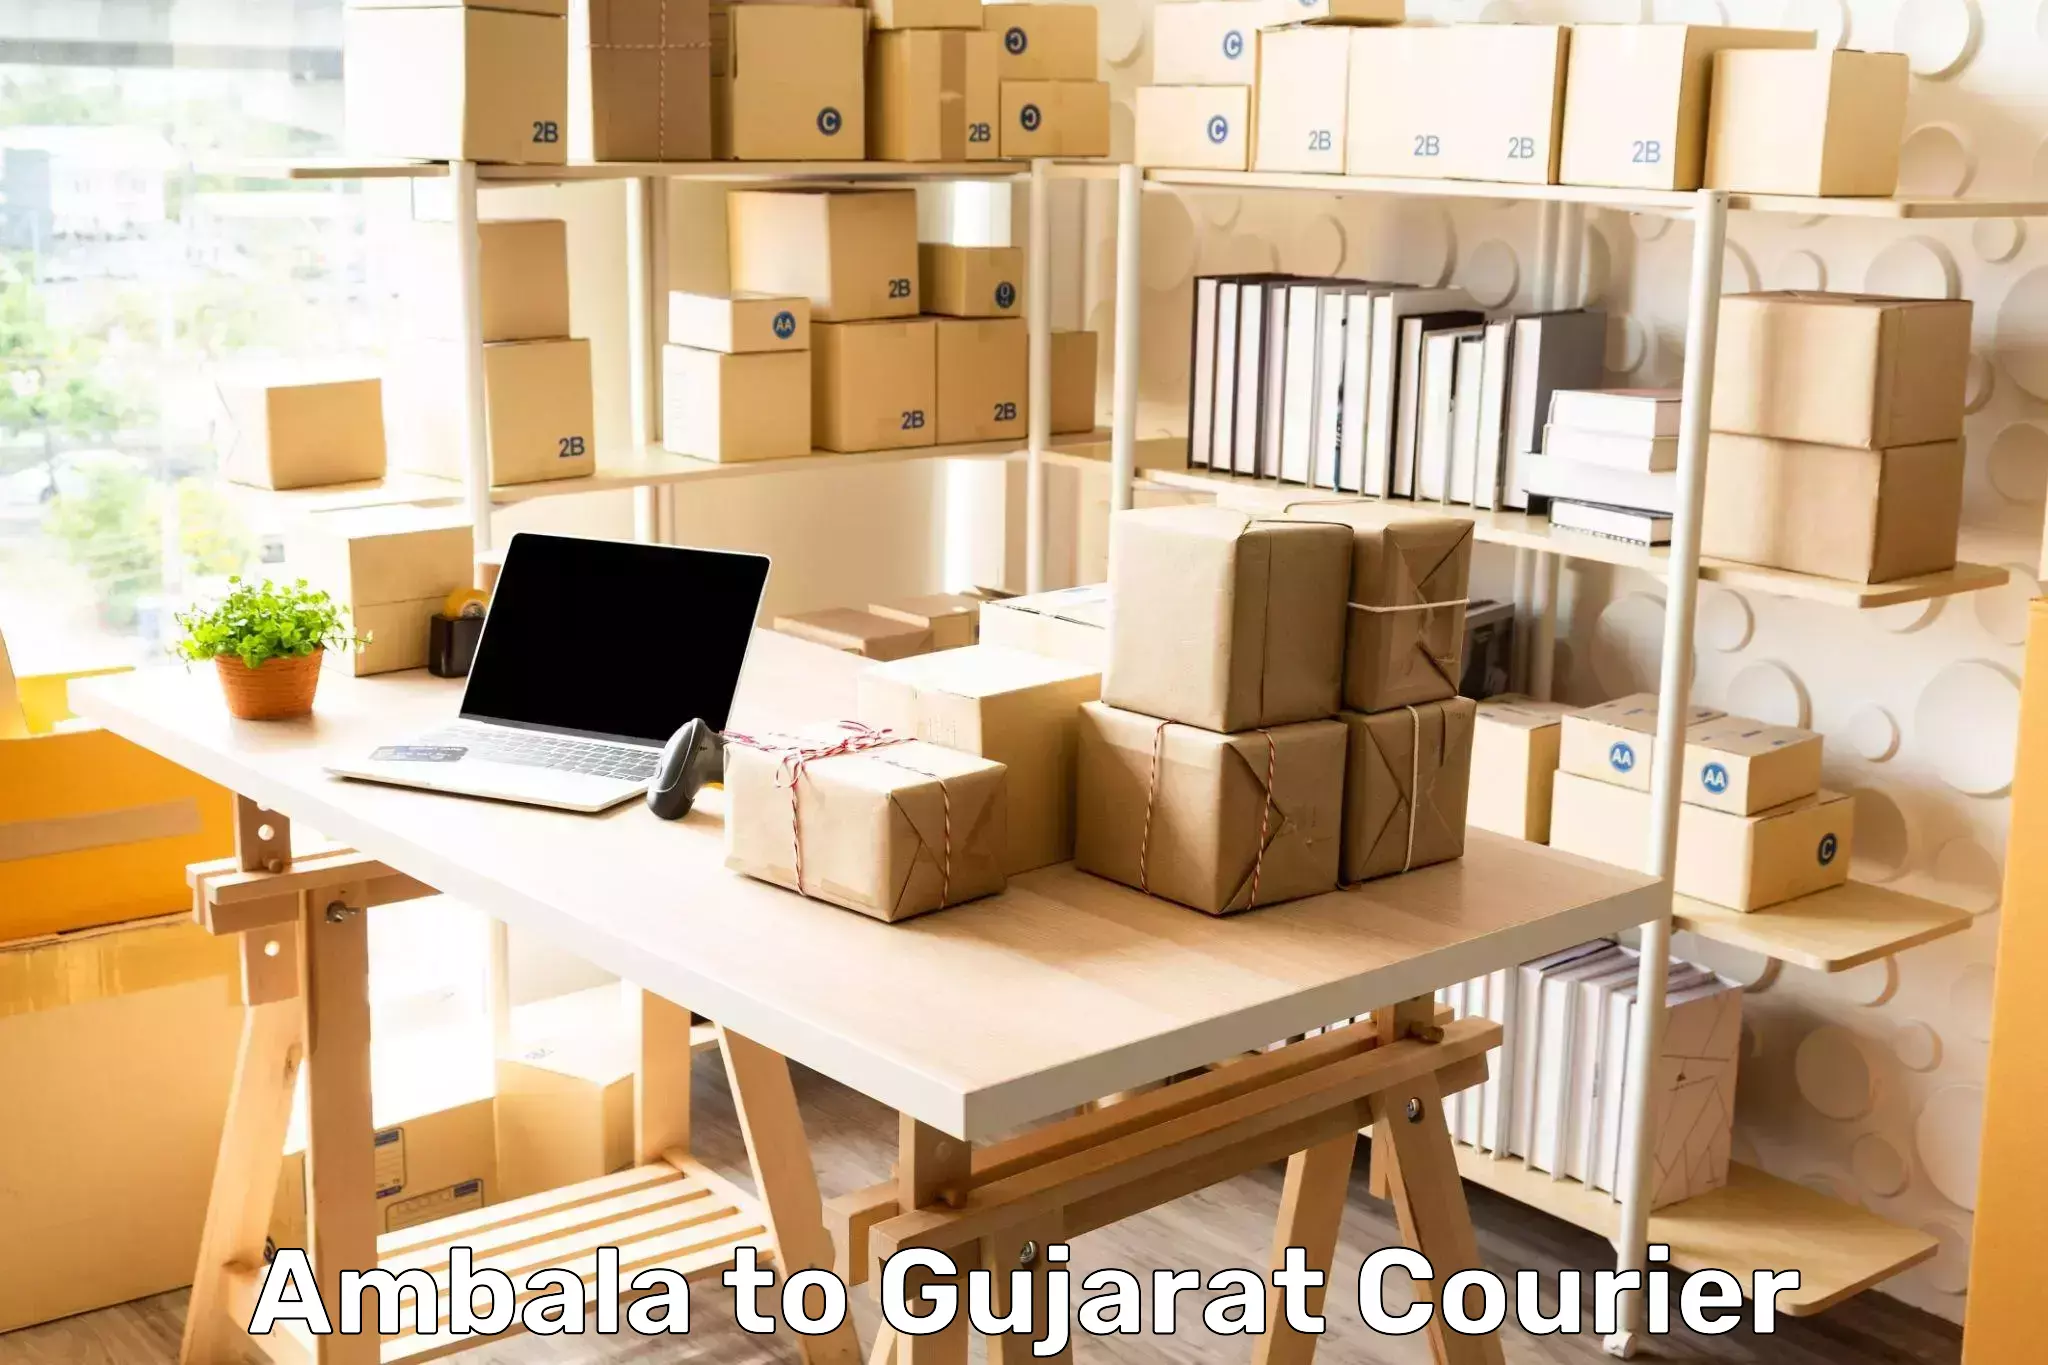 Holiday shipping services Ambala to Gujarat